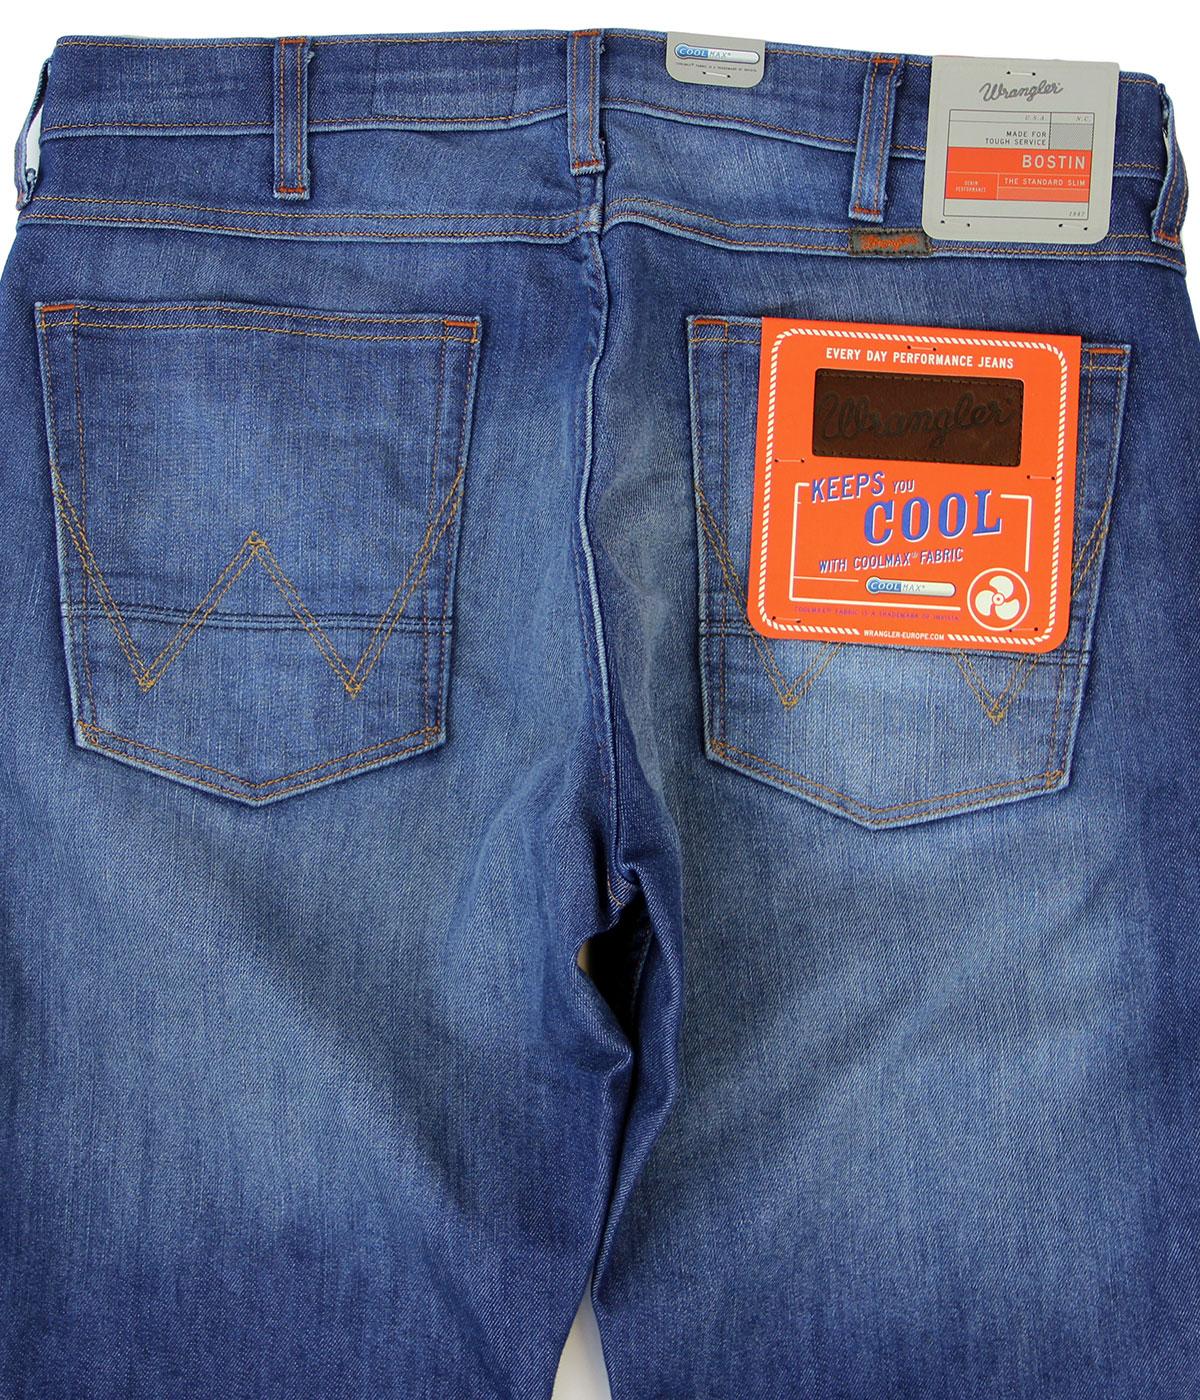 WRANGLER Bostin Retro Mod Slim Coolmax Denim Jeans Make Good